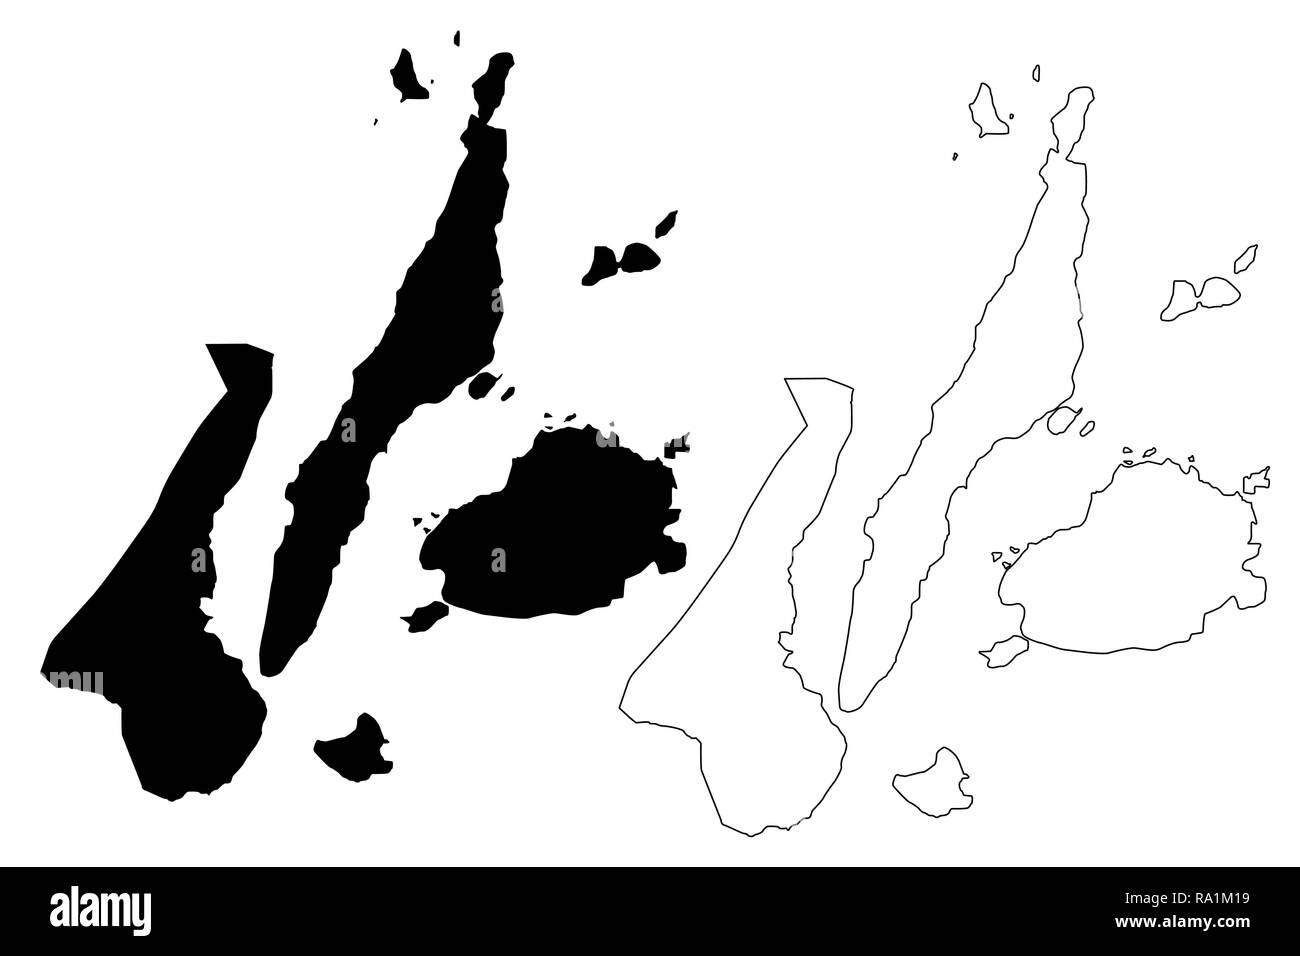 Central Visayas Region (Regionen und Provinzen der Philippinen, die Republik der Philippinen) Karte Vektor-illustration, kritzeln Skizze Region VII Karte Stock Vektor